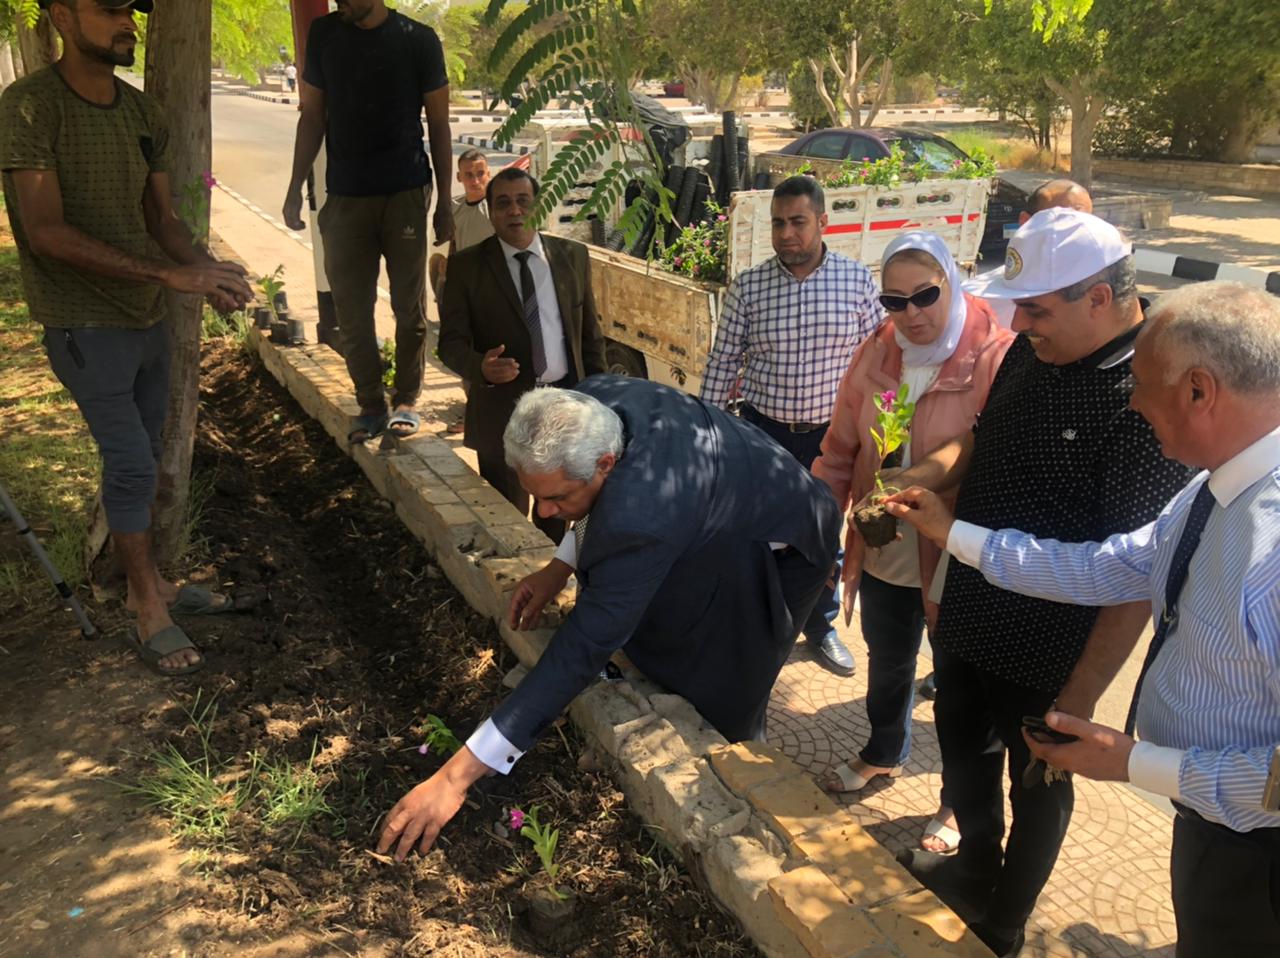 بالصور رئيس جامعة الأزهر يشارك في حب مصر ويقوم بزراعة أشجار الزينة